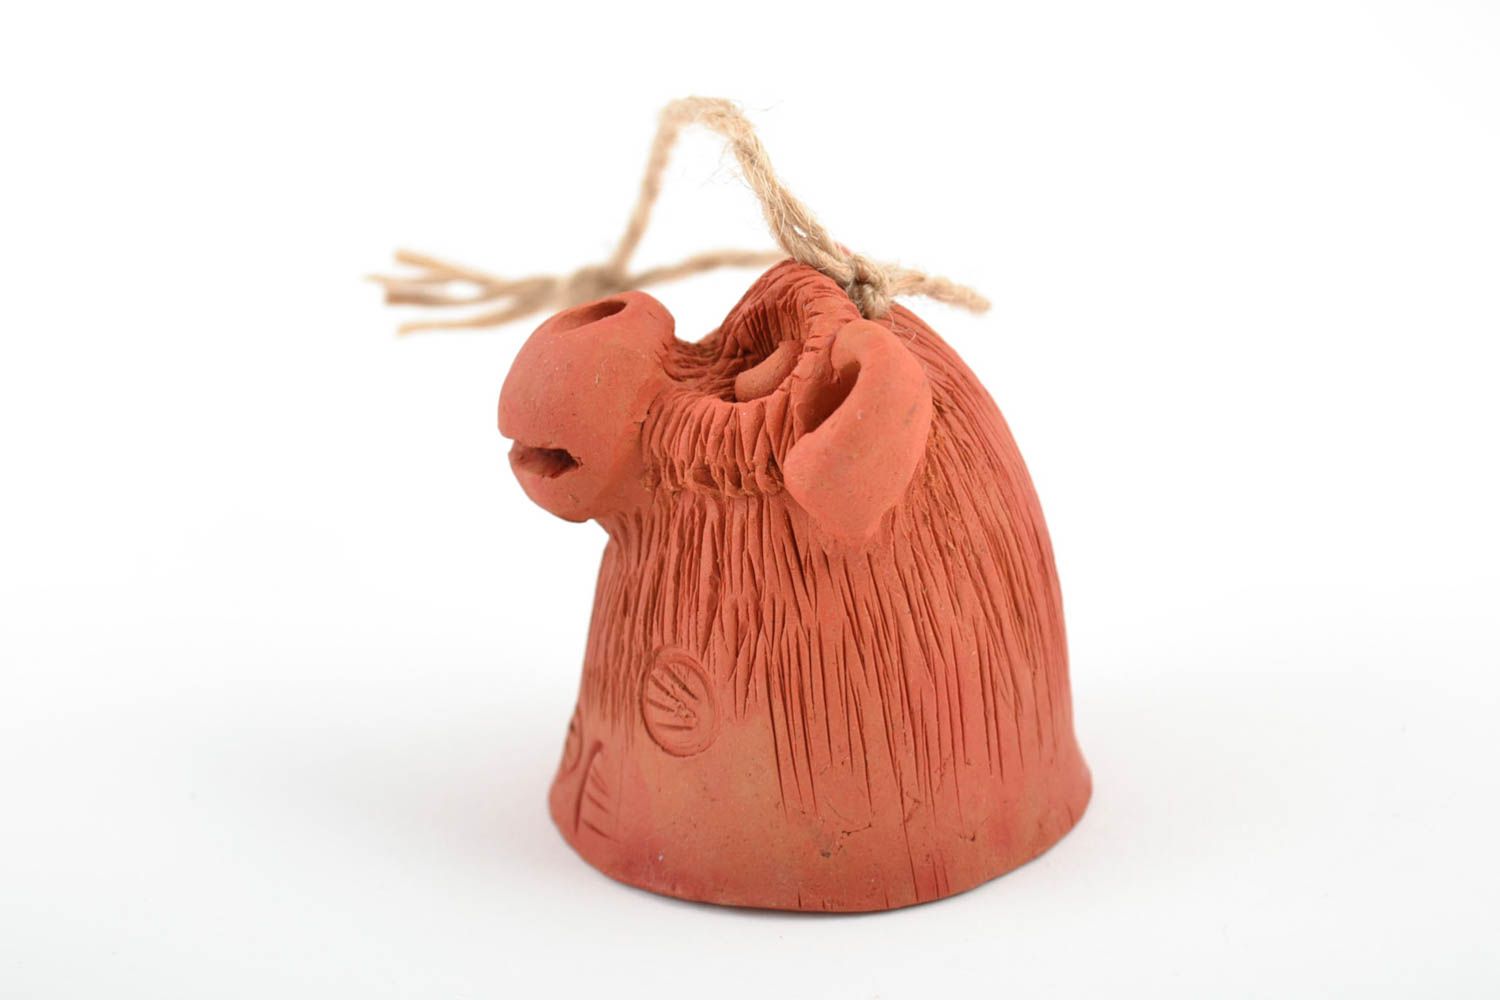 Авторский керамический колокольчик ручной работы из красной глины обезьянка фото 4